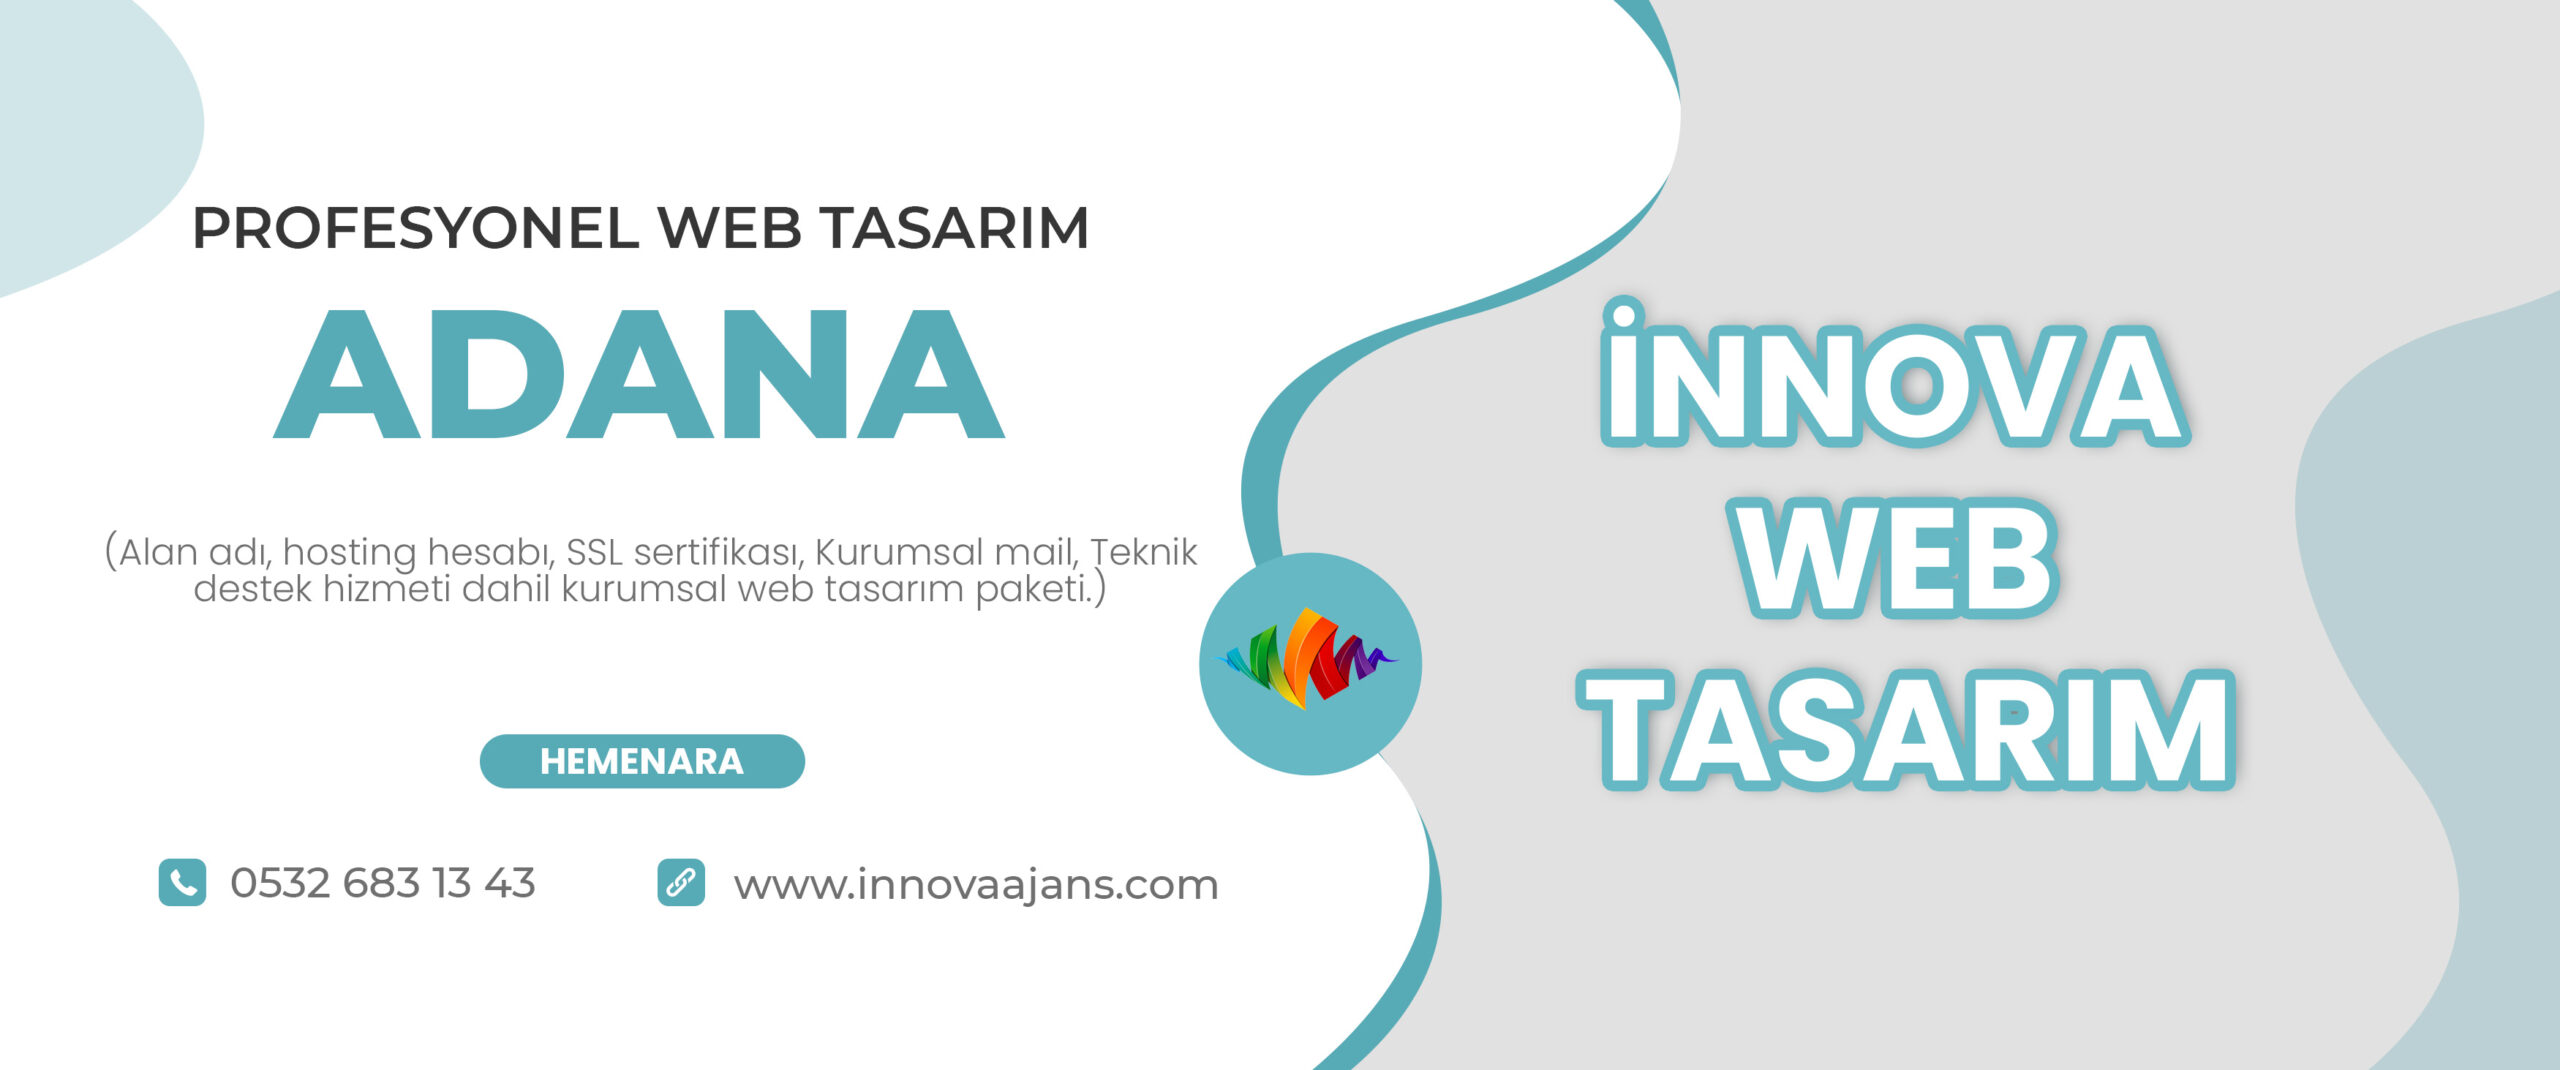 Adana web tasarım firması